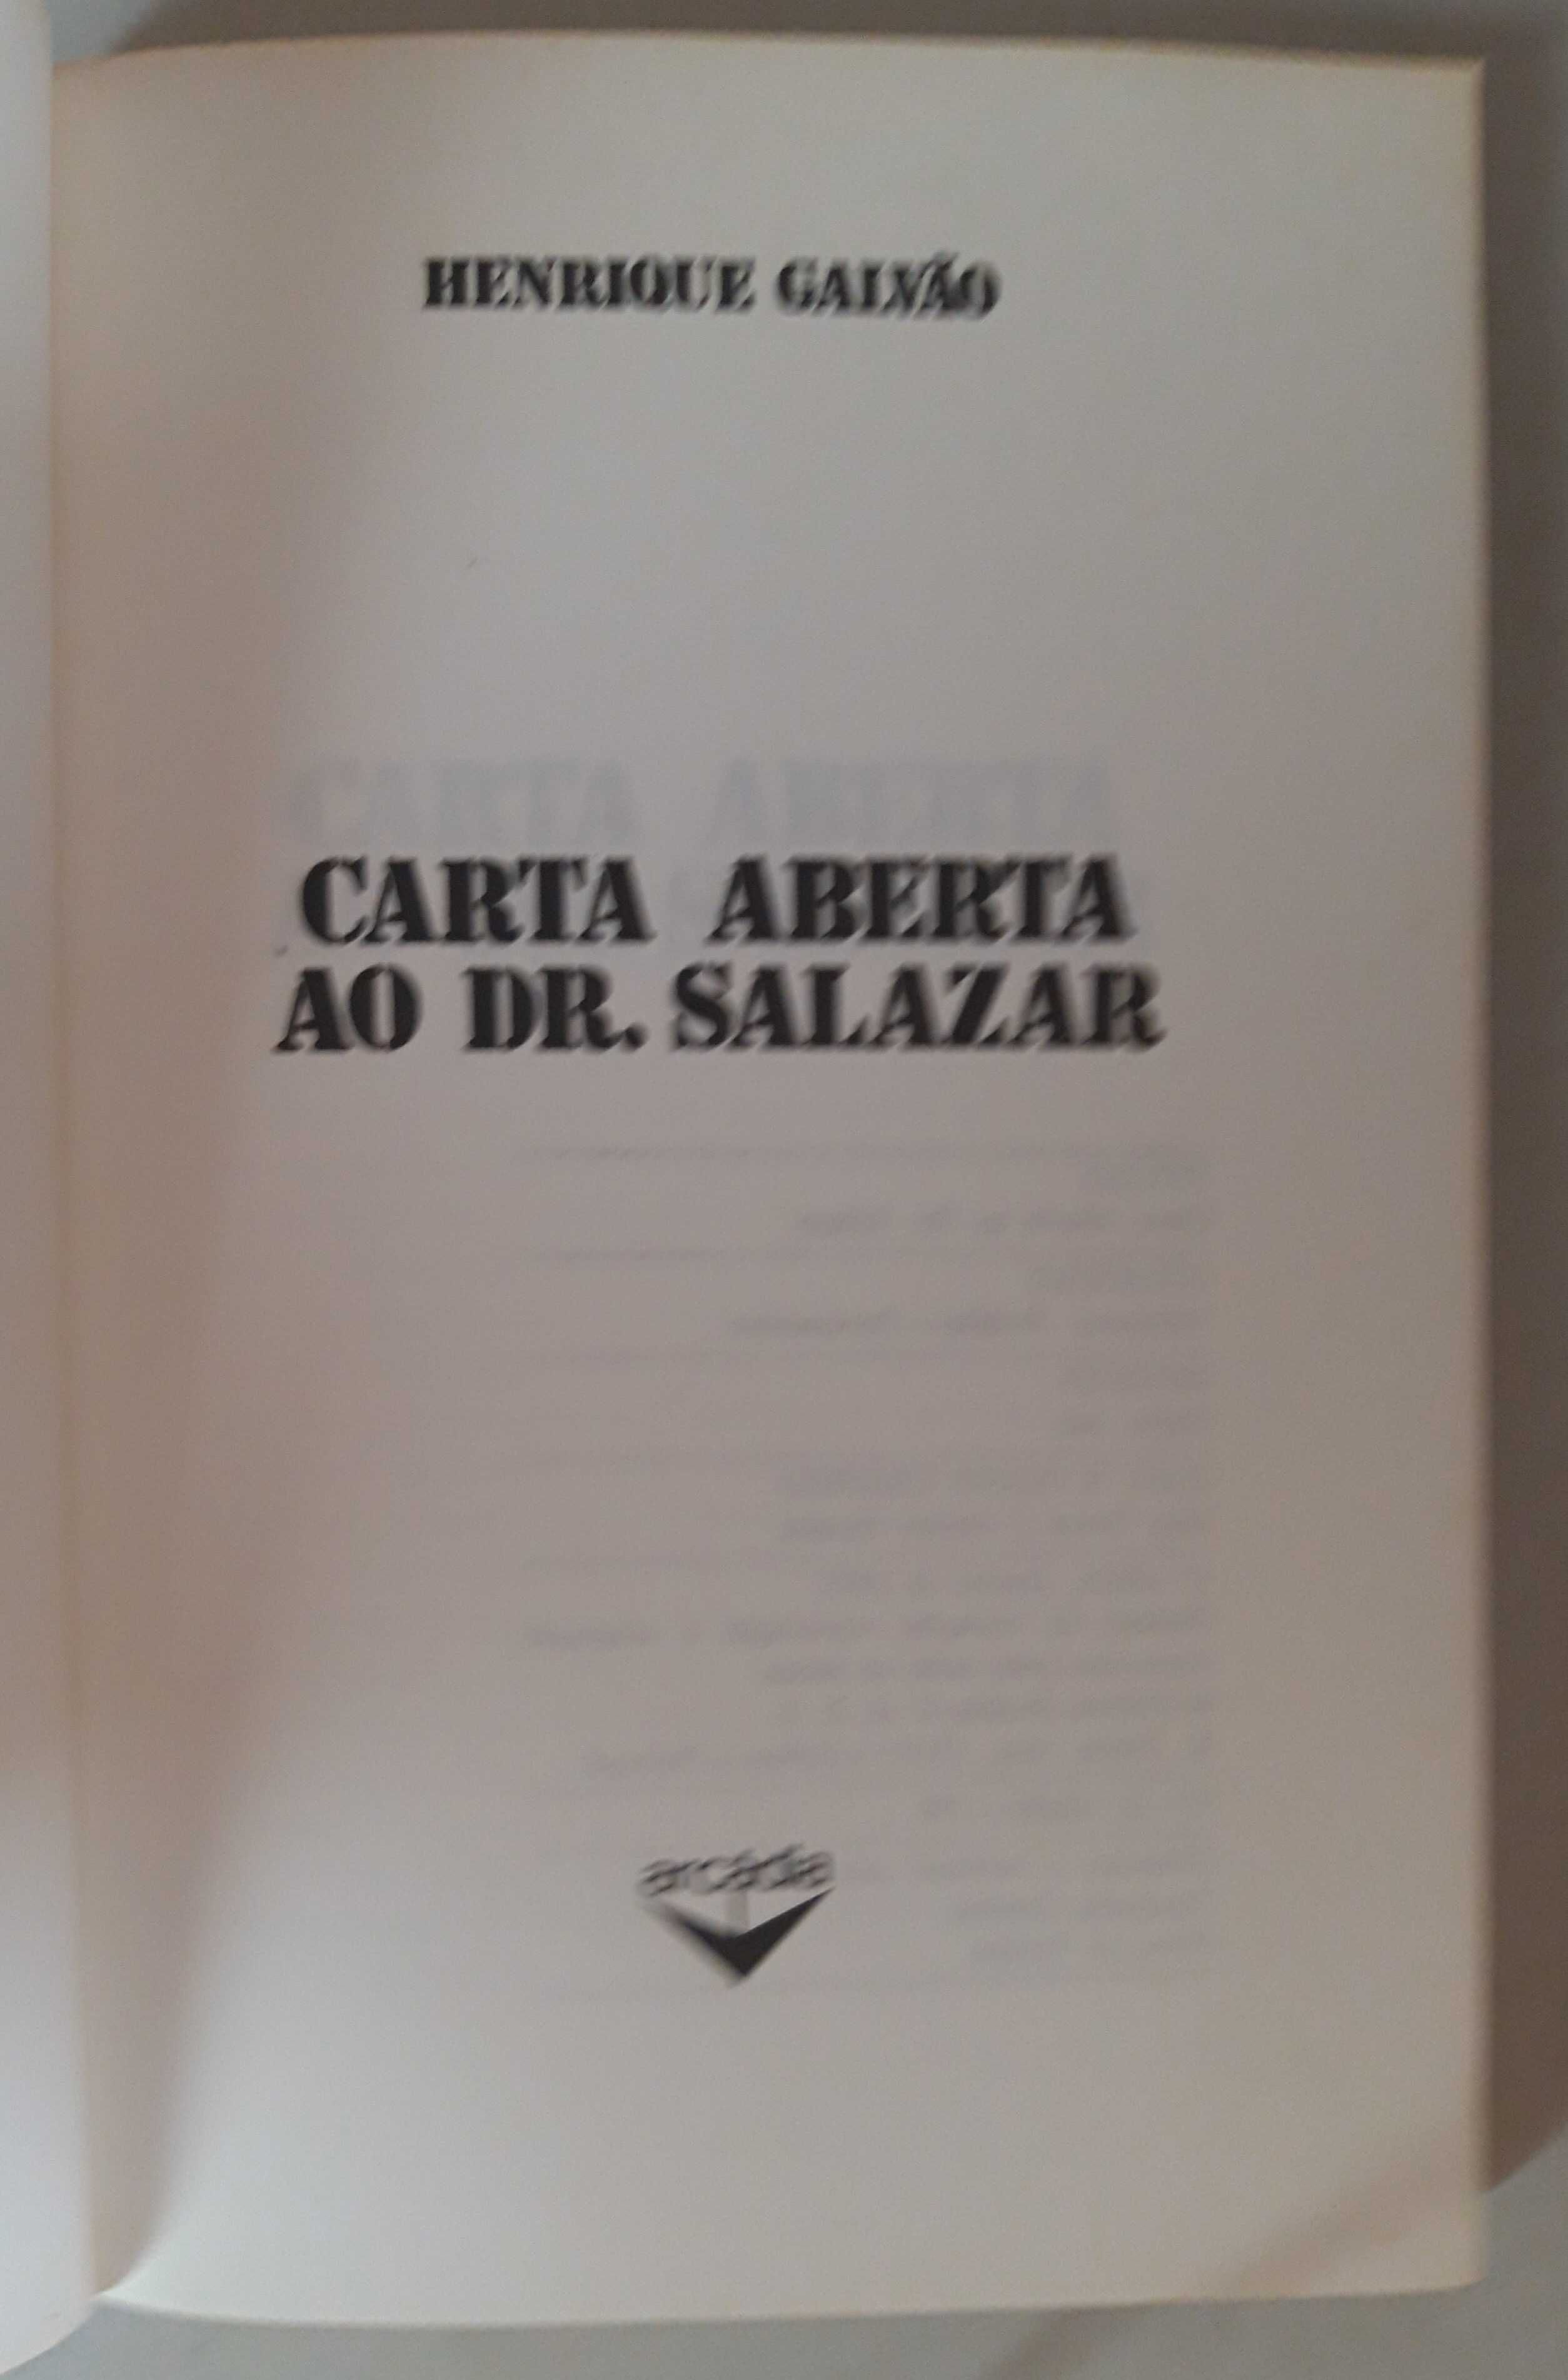 Livro- Ref CxC  - Henrique Galvão - Carta Aberta ao Dr. Salazar